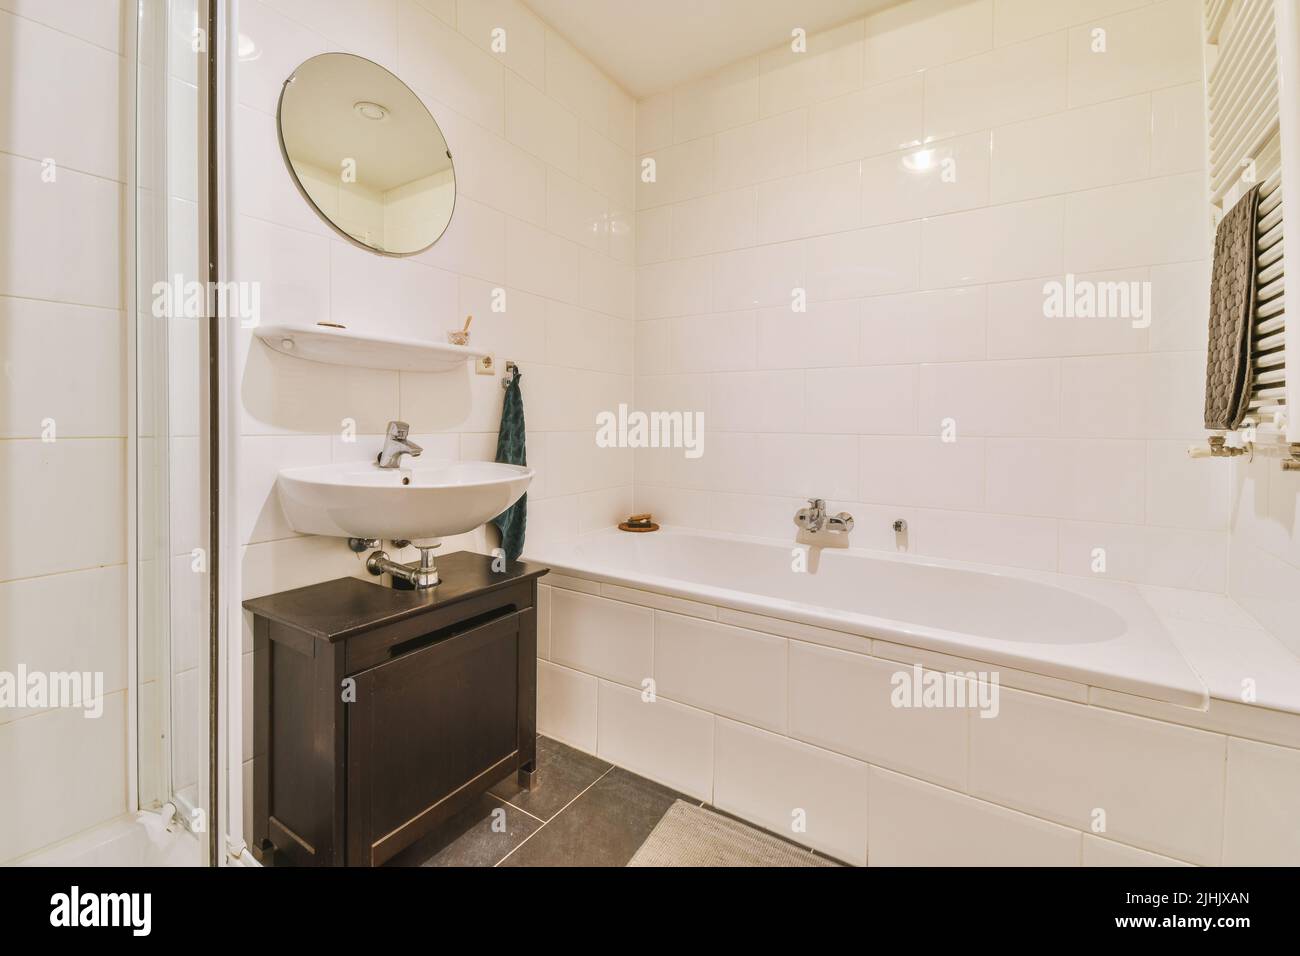 Bañera y cabina de ducha con azulejos y pared de cristal situada